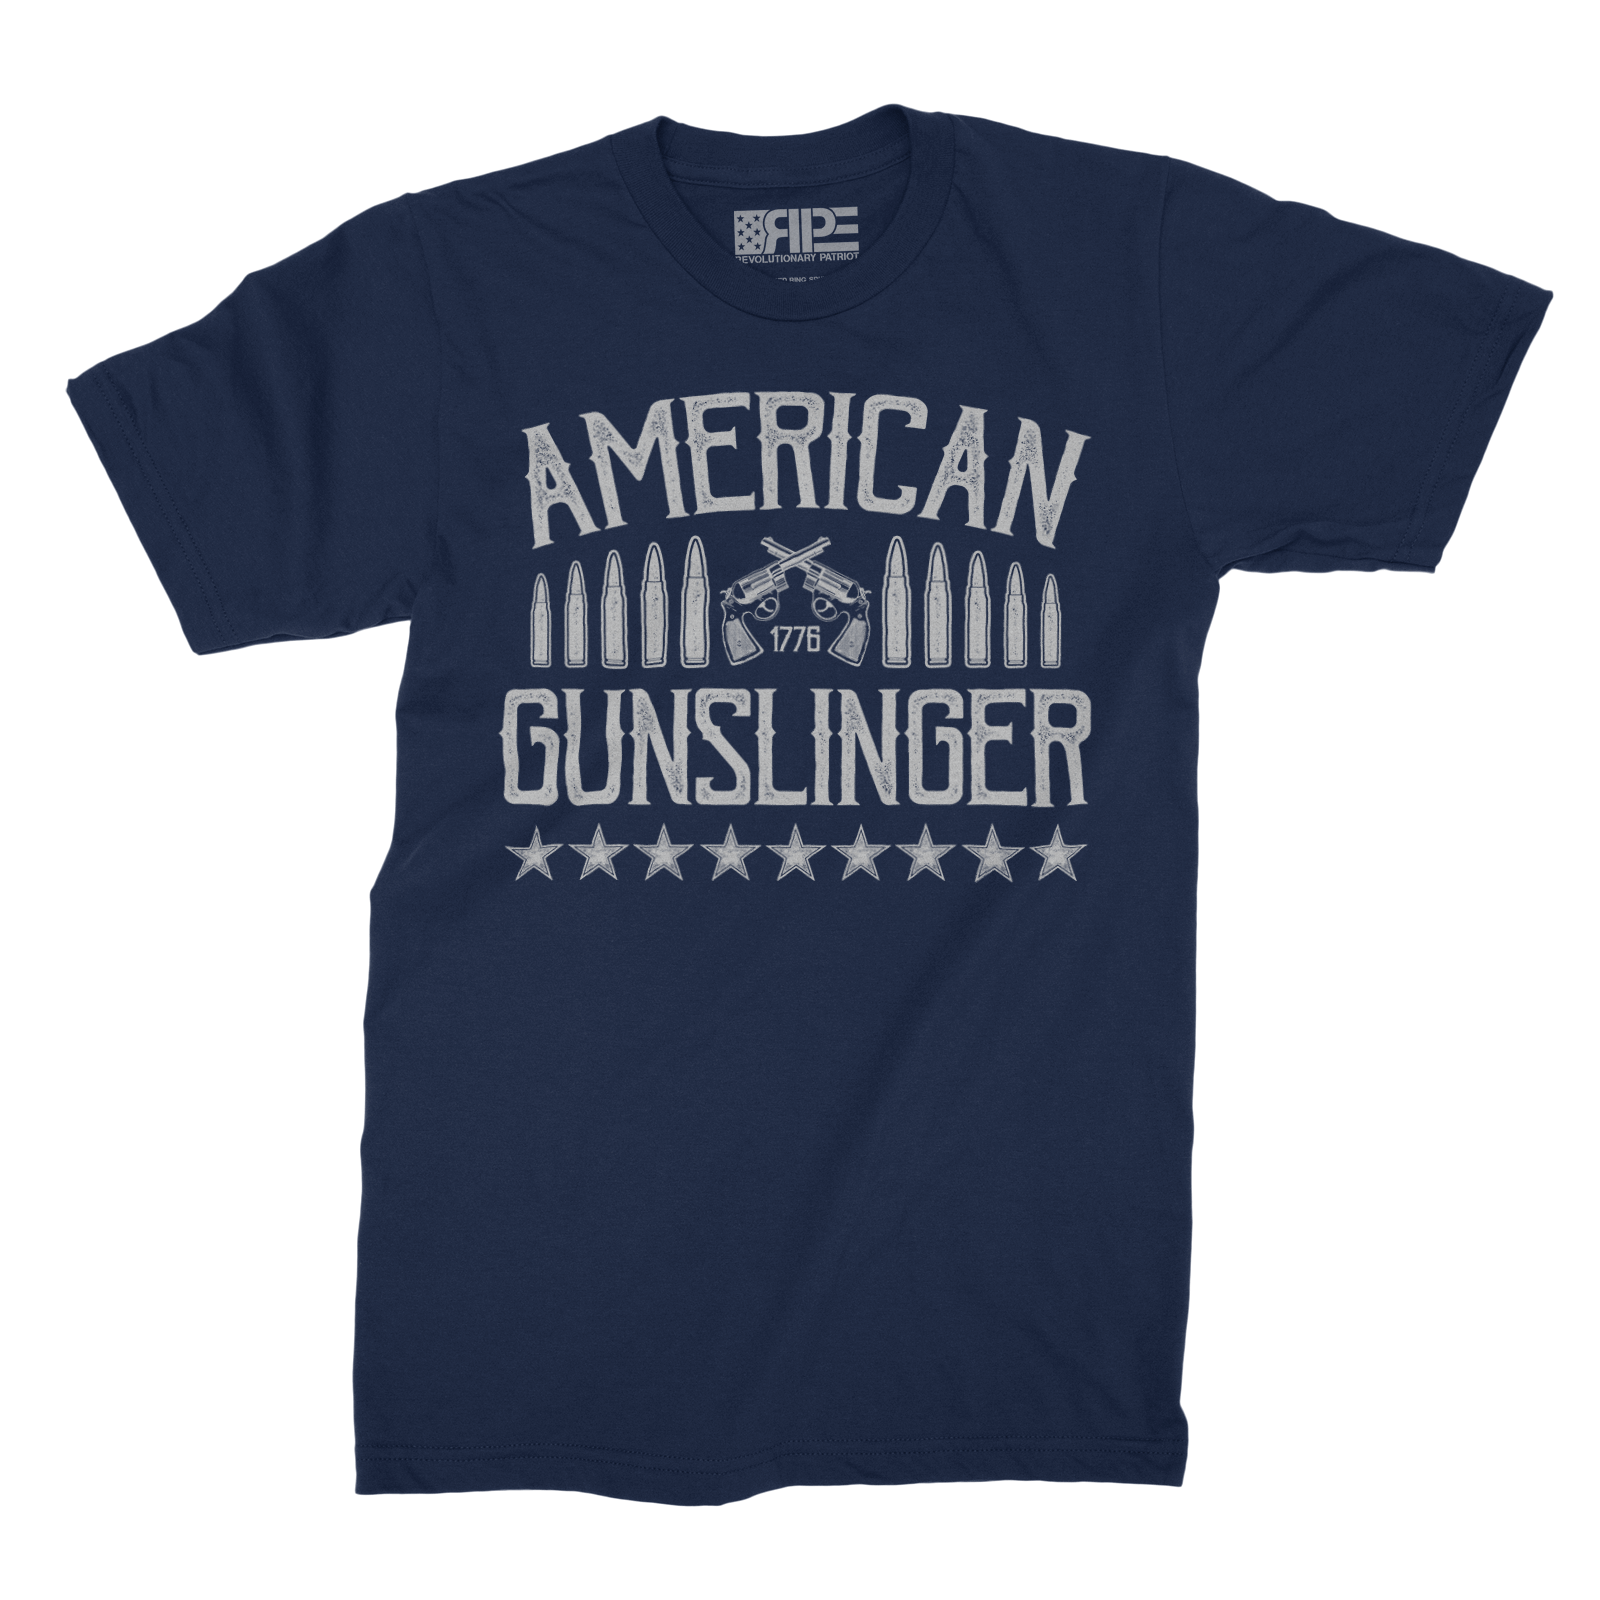 American Gunslinger (Navy) - Revolutionary Patriot